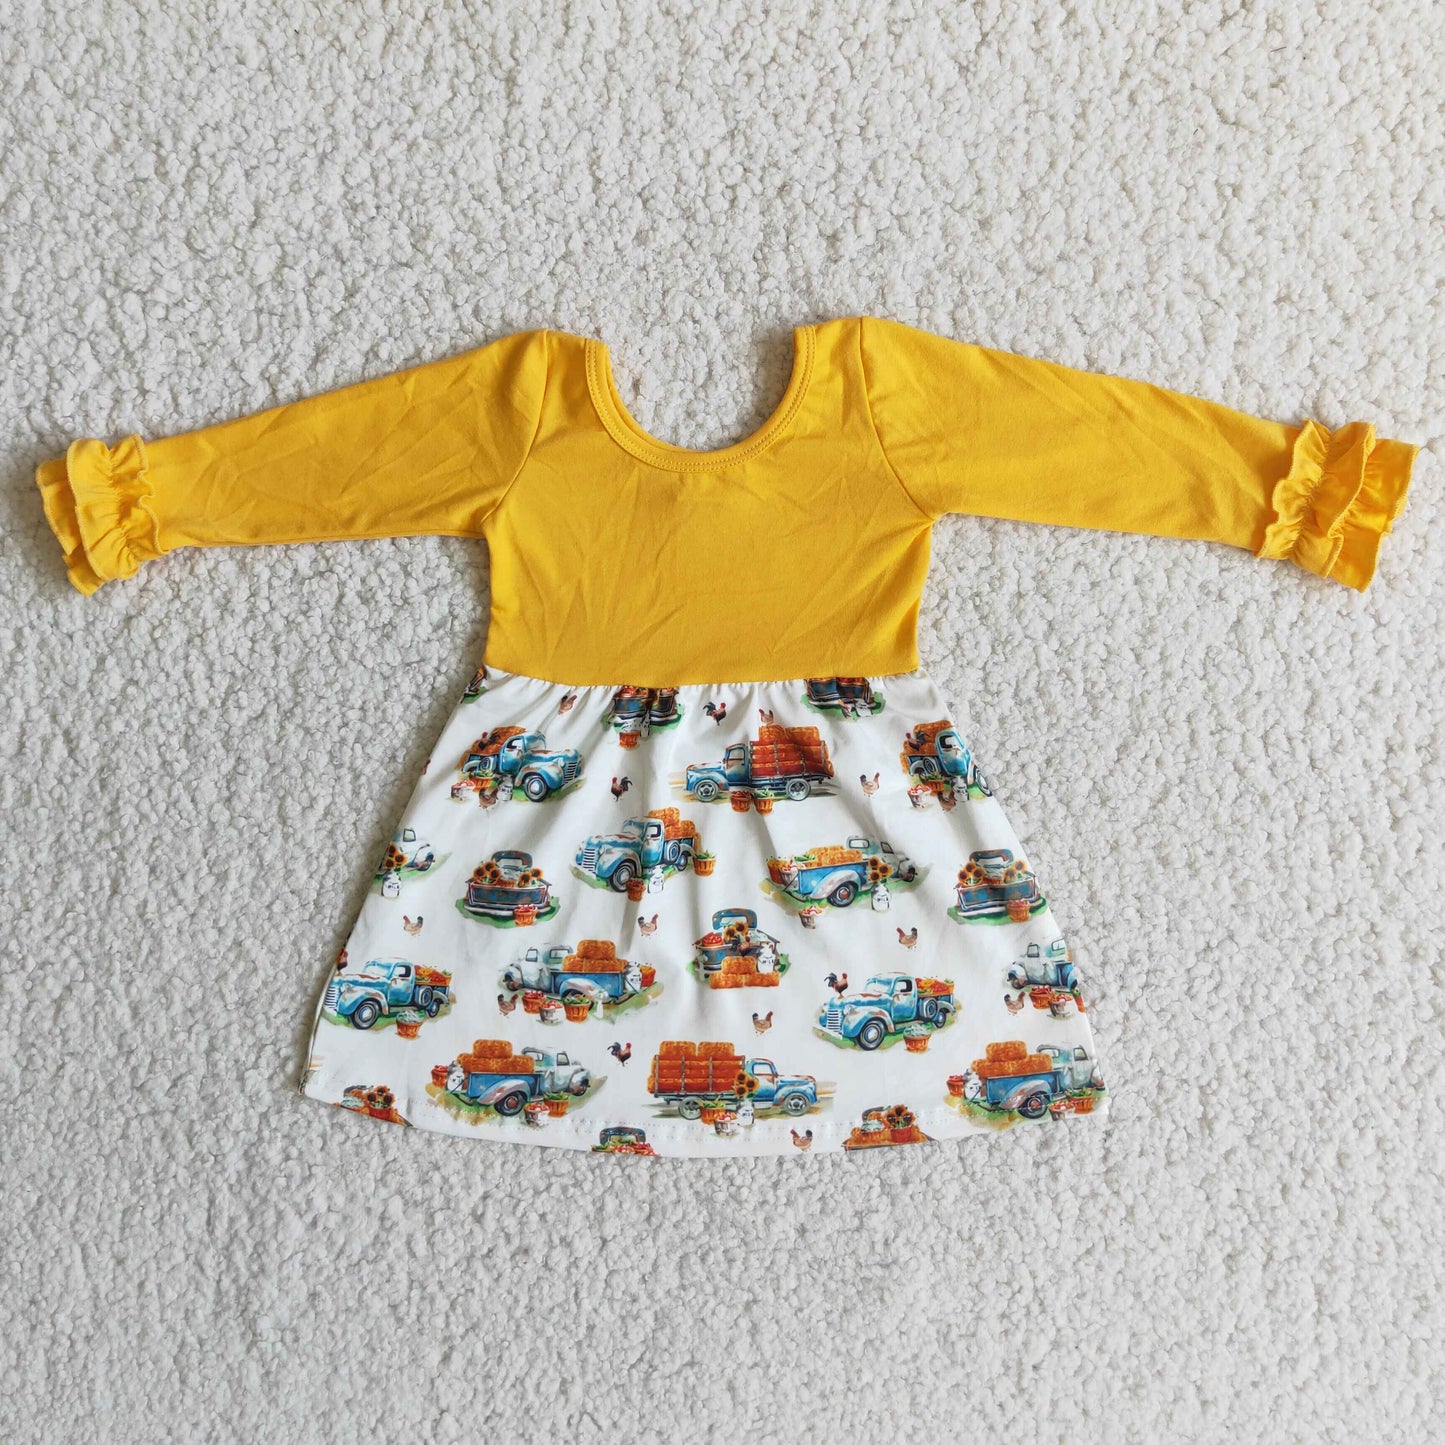 Fall Yellow Ruffle Pumpkin Dress Kids Clothing